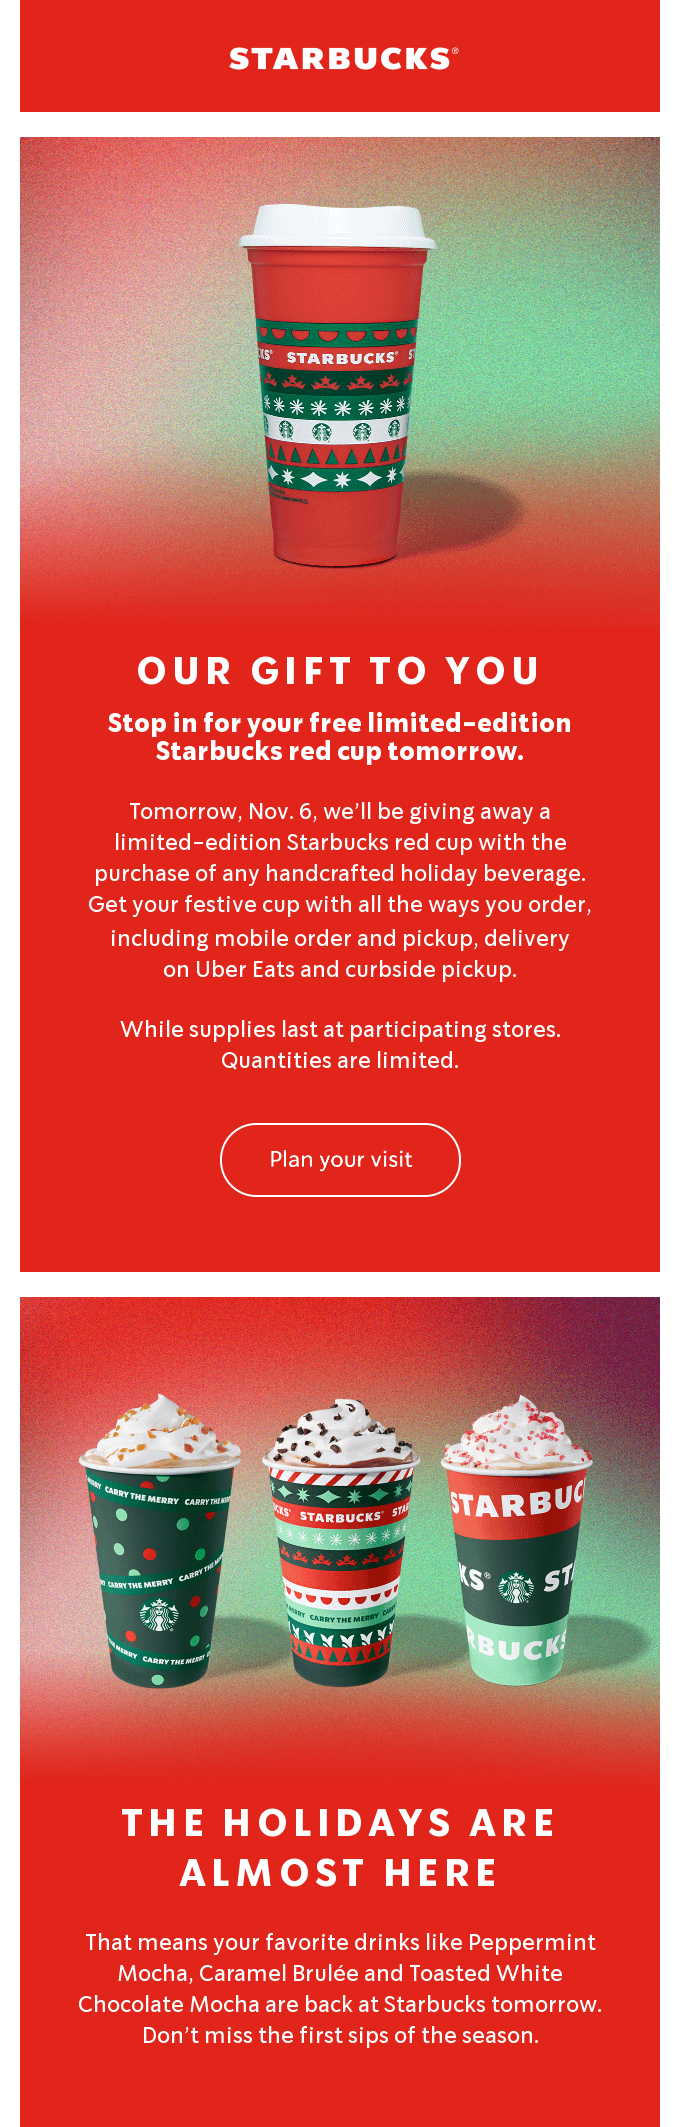 Email de navidad de Starbucks en rojo y verde con tazas navideñas